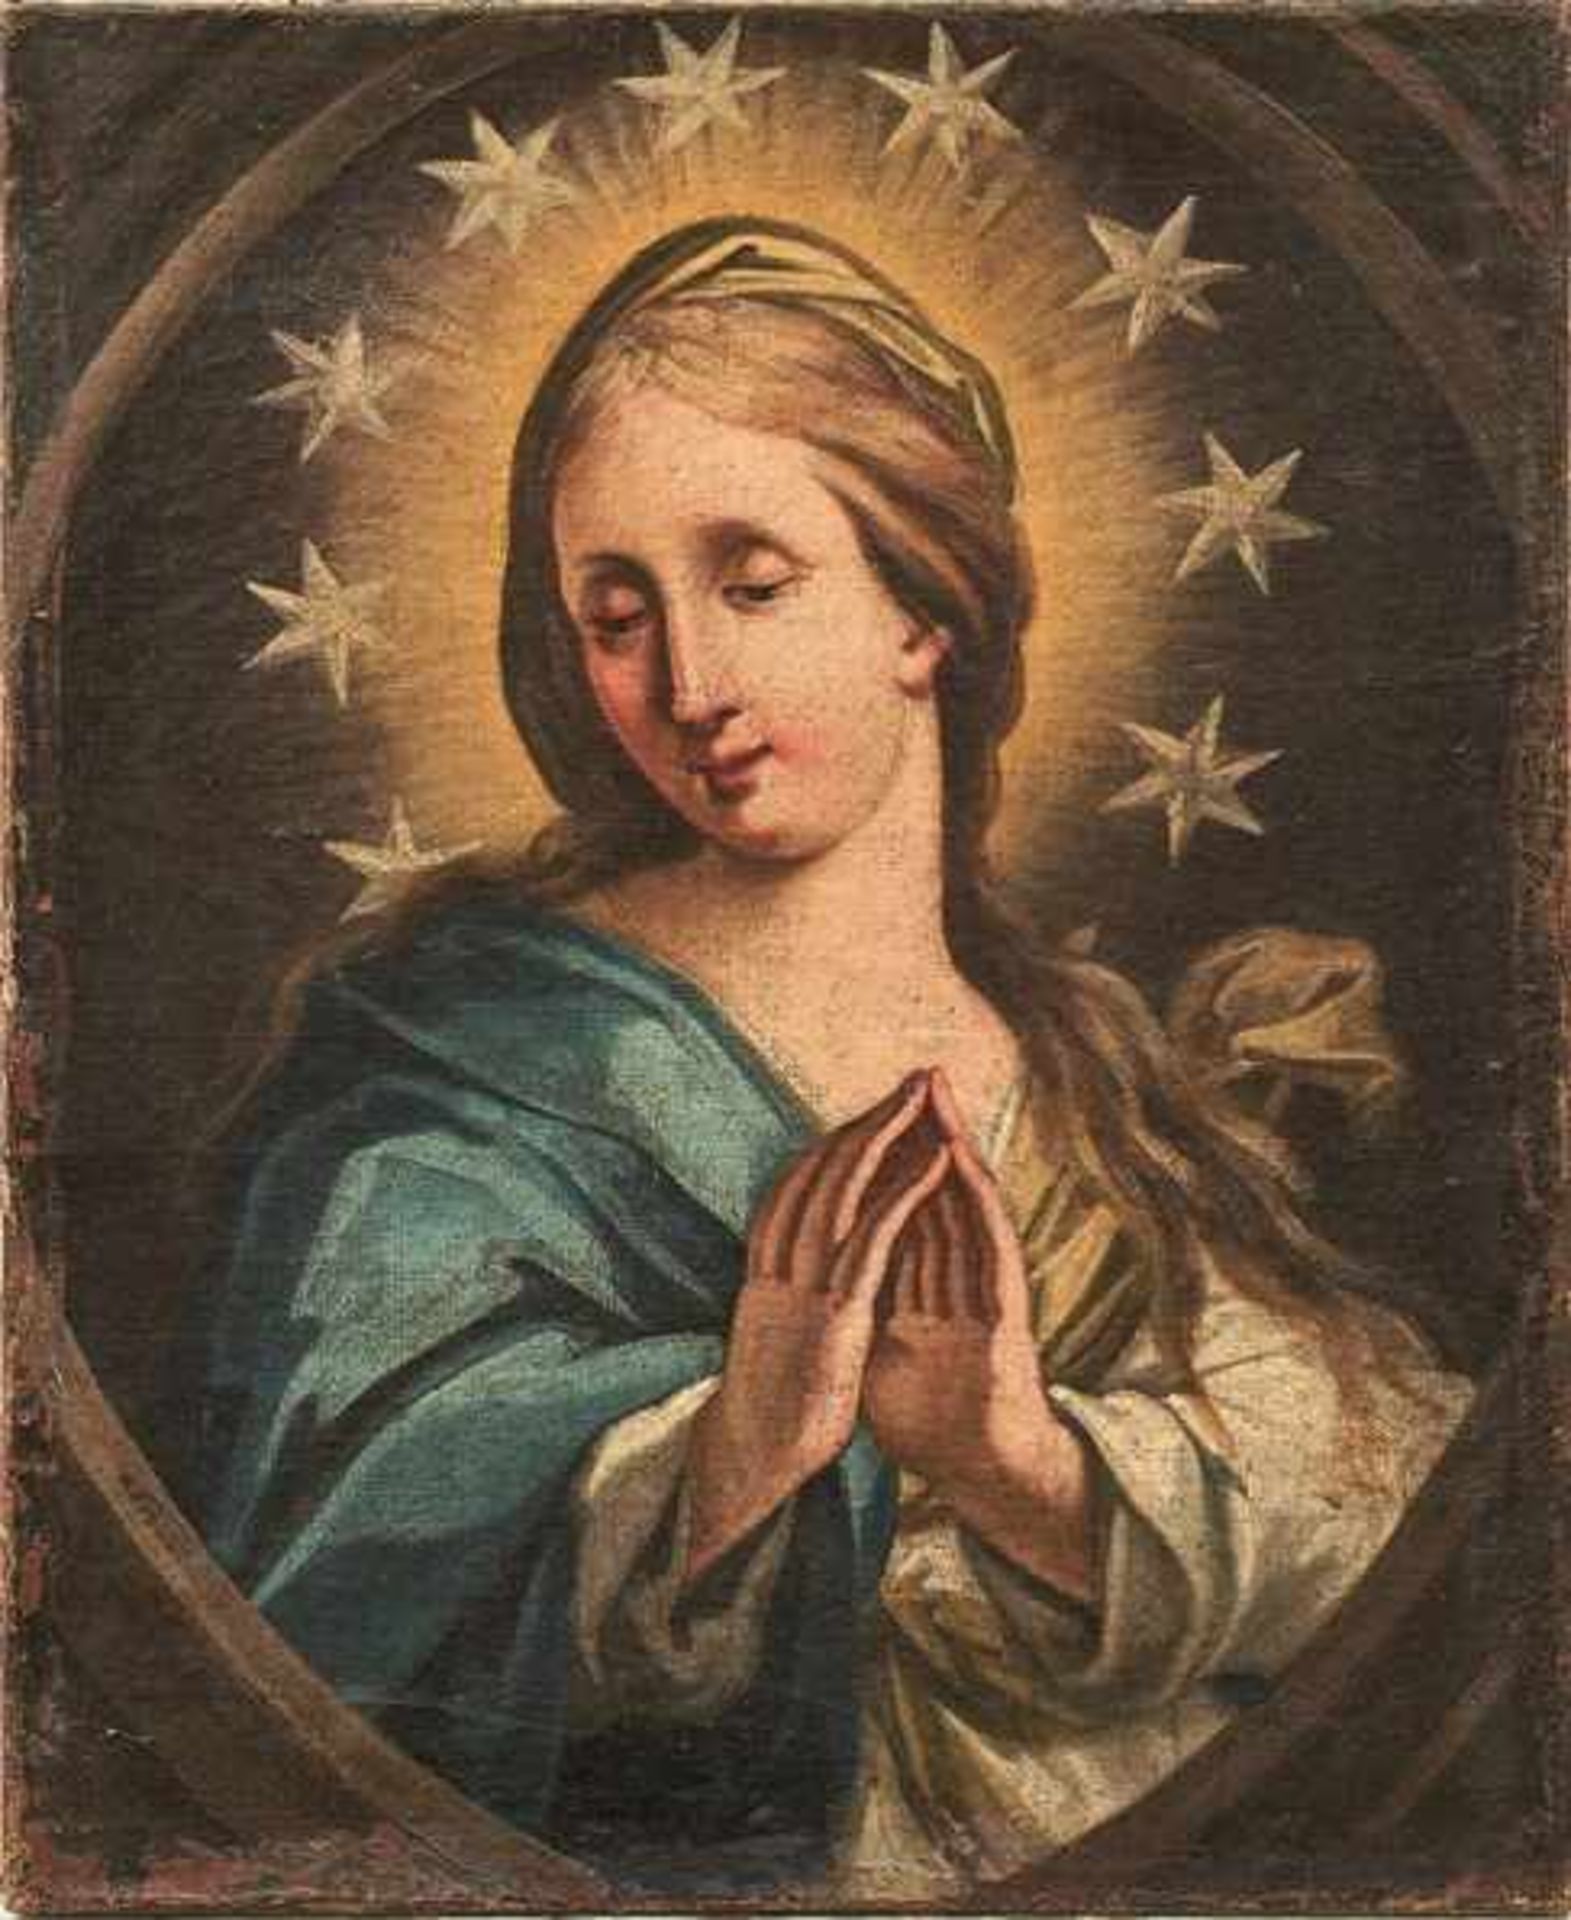 Die Jungfrau Maria vor Gloriole mit Sternenkranz 18. Jh. Öl/Lwd. Verso bez. "Pinxit Guichy /